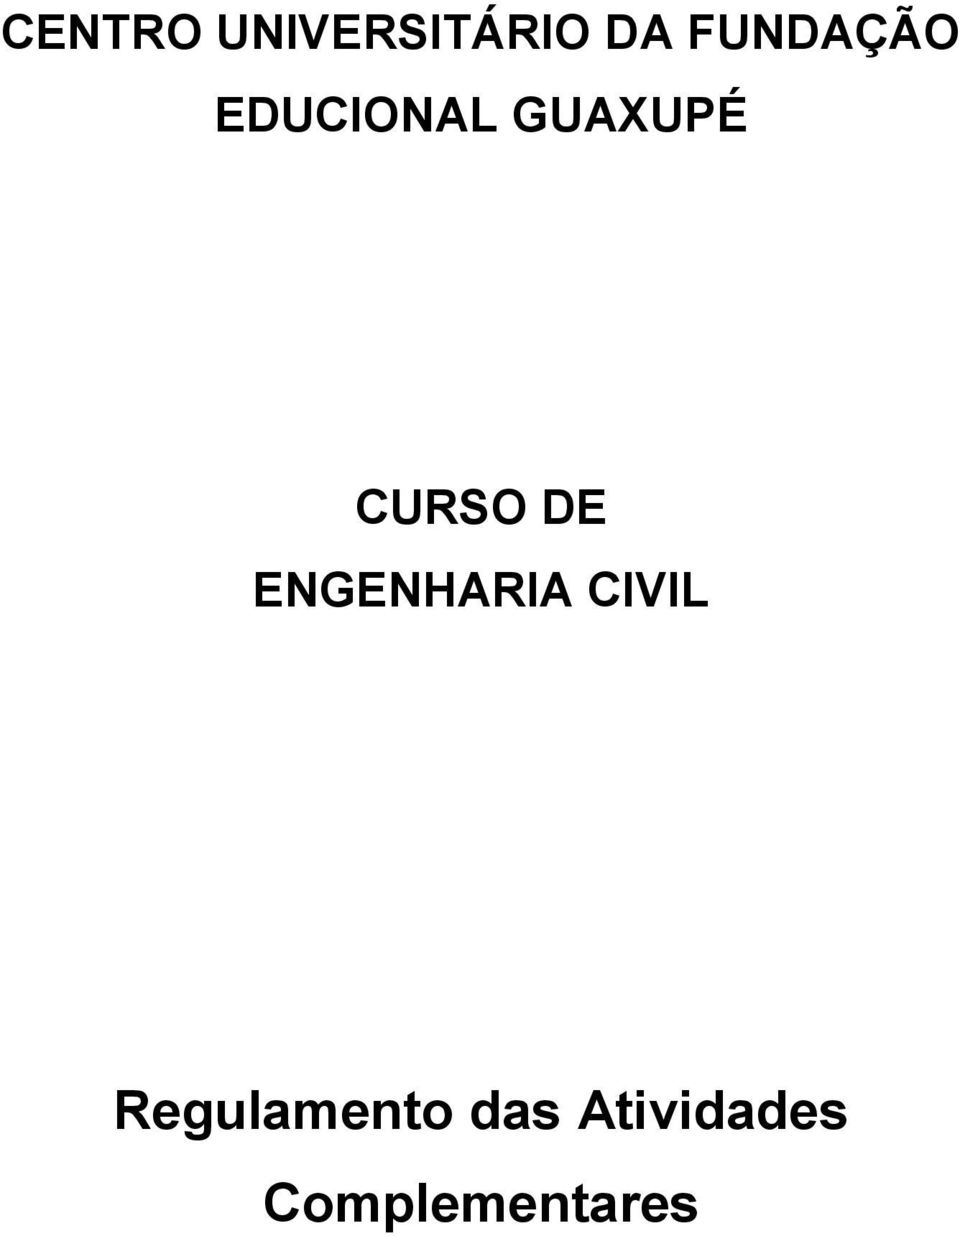 CURSO DE ENGENHARIA CIVIL